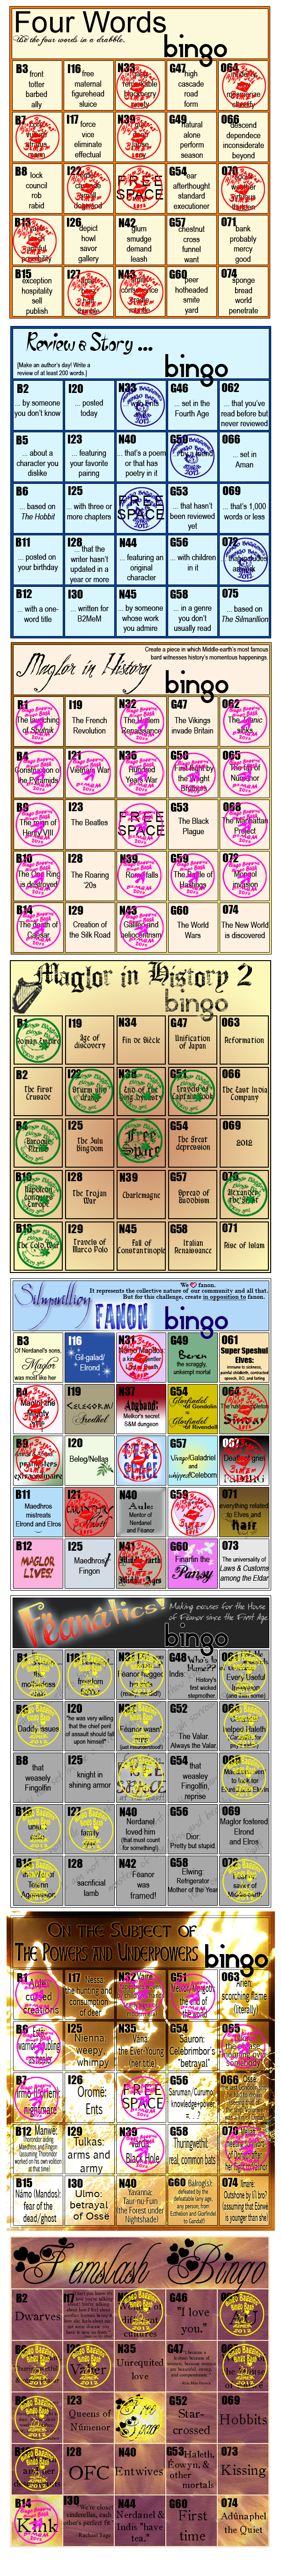 Rhapsody's Bingo Cards